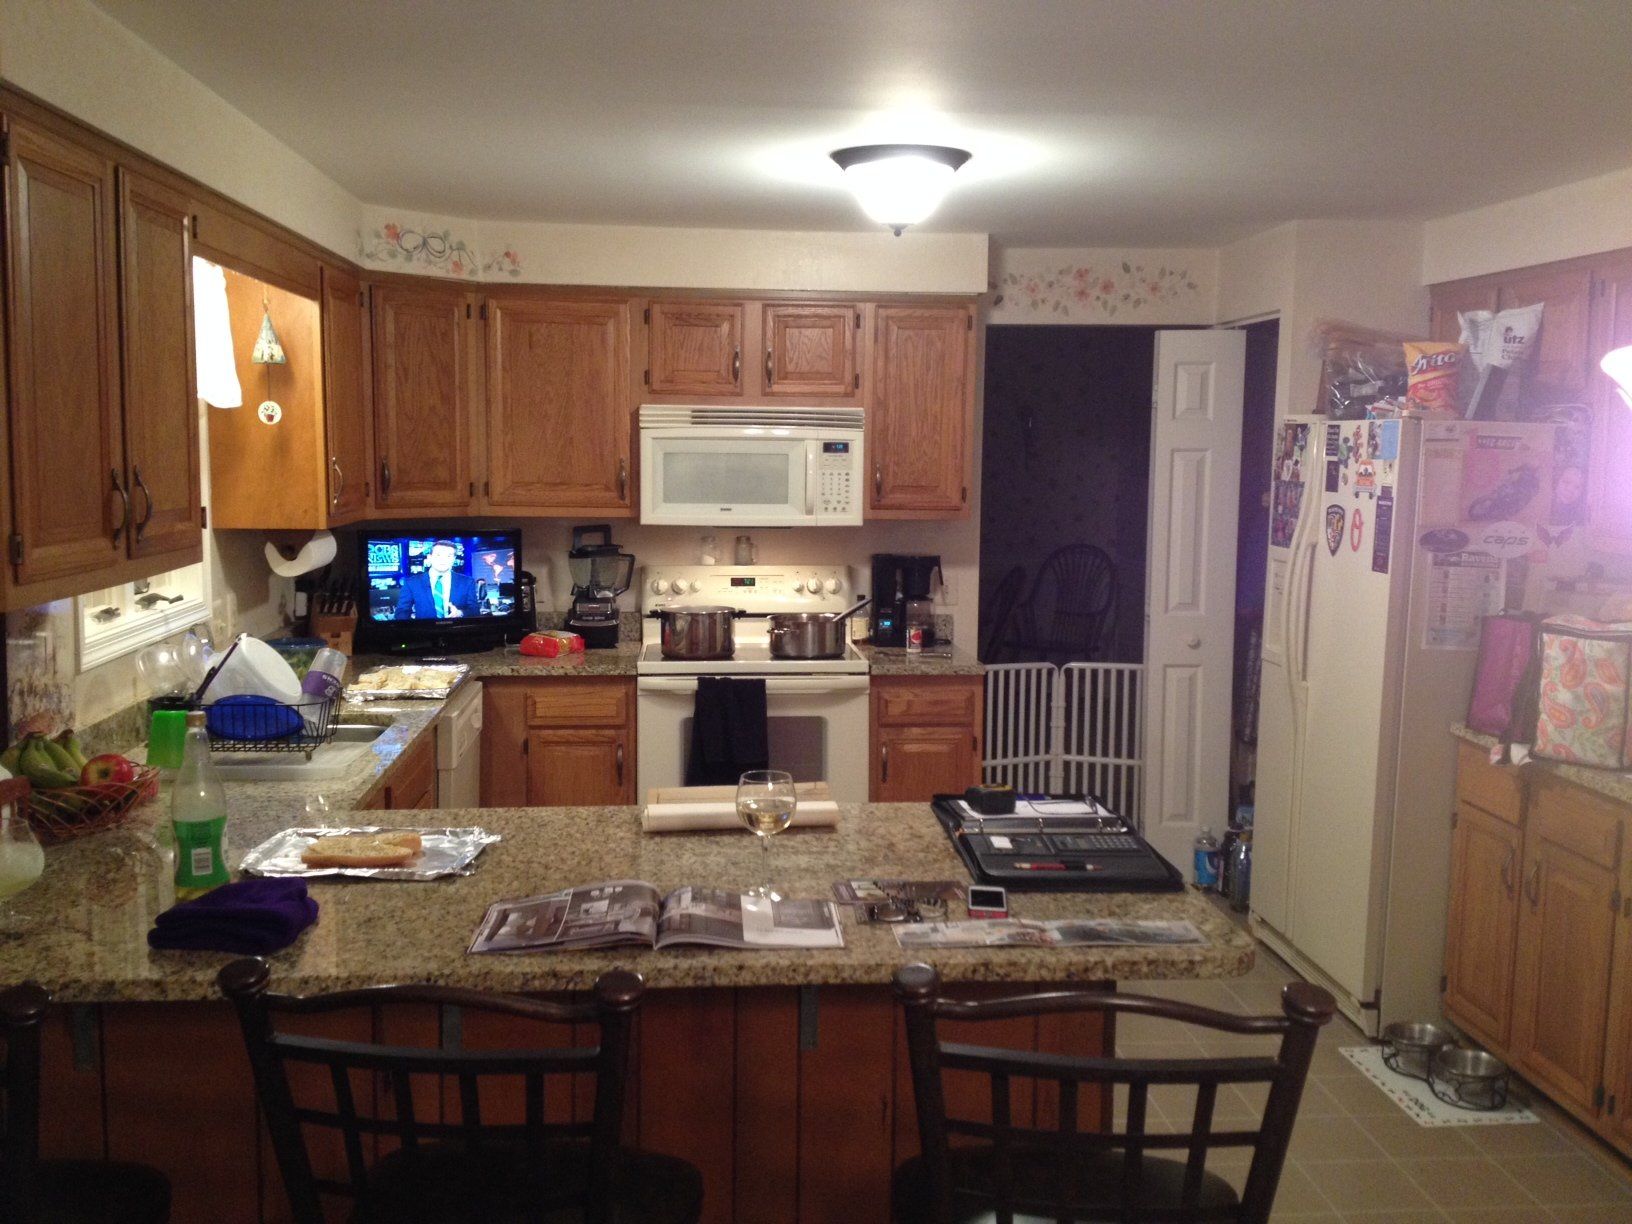 Kitchen 03 - Home Improvement Services in Glen Arm, MD